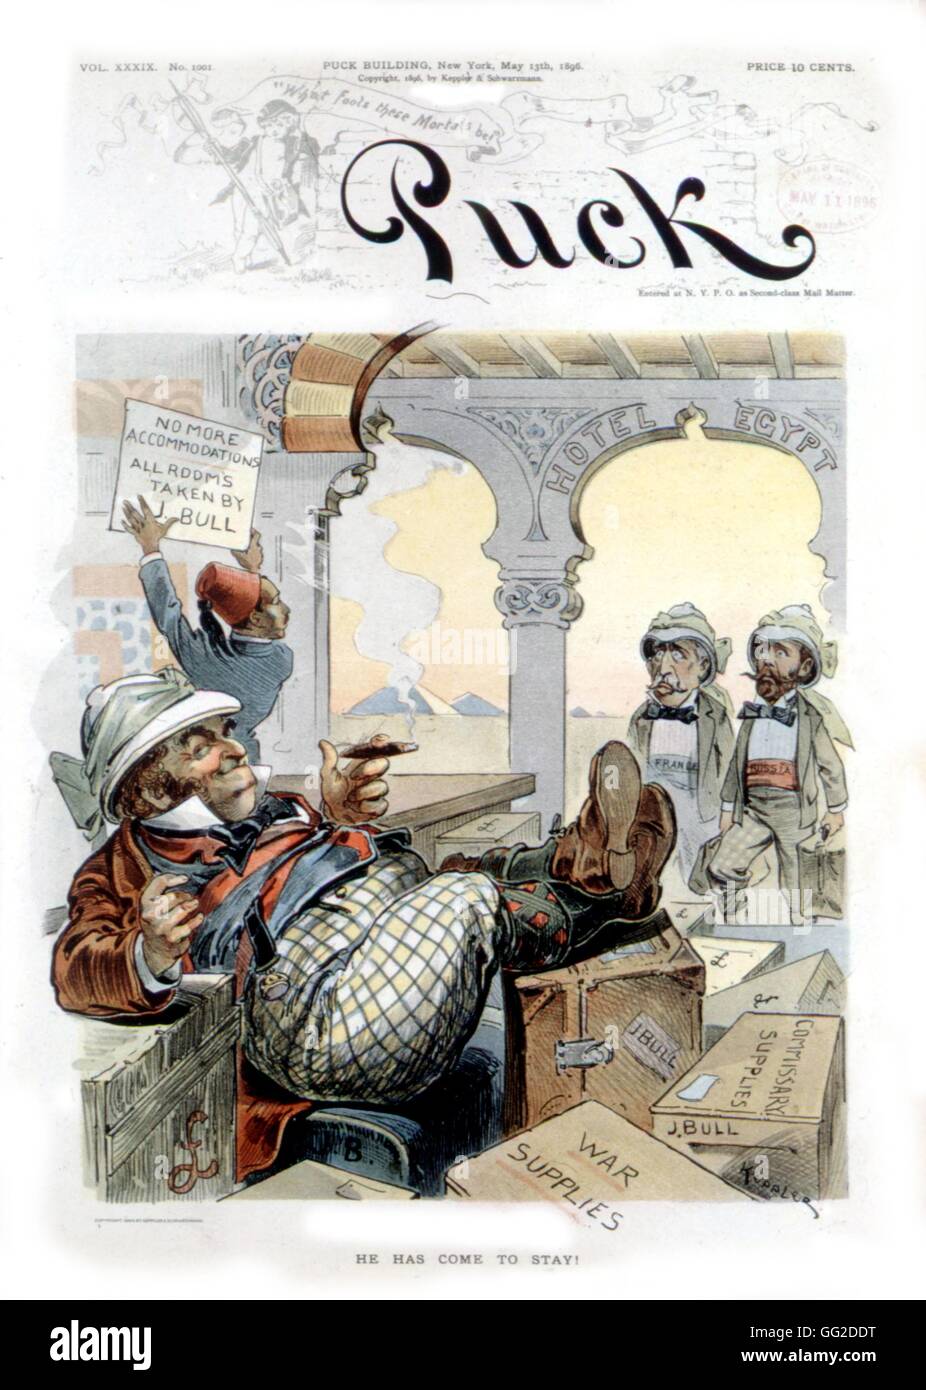 Karikatur über die Engländer, die Ankunft in Ägypten. Veröffentlicht in "Puck" 1896 Vereinigte Staaten Washington. Library of Congress Stockfoto